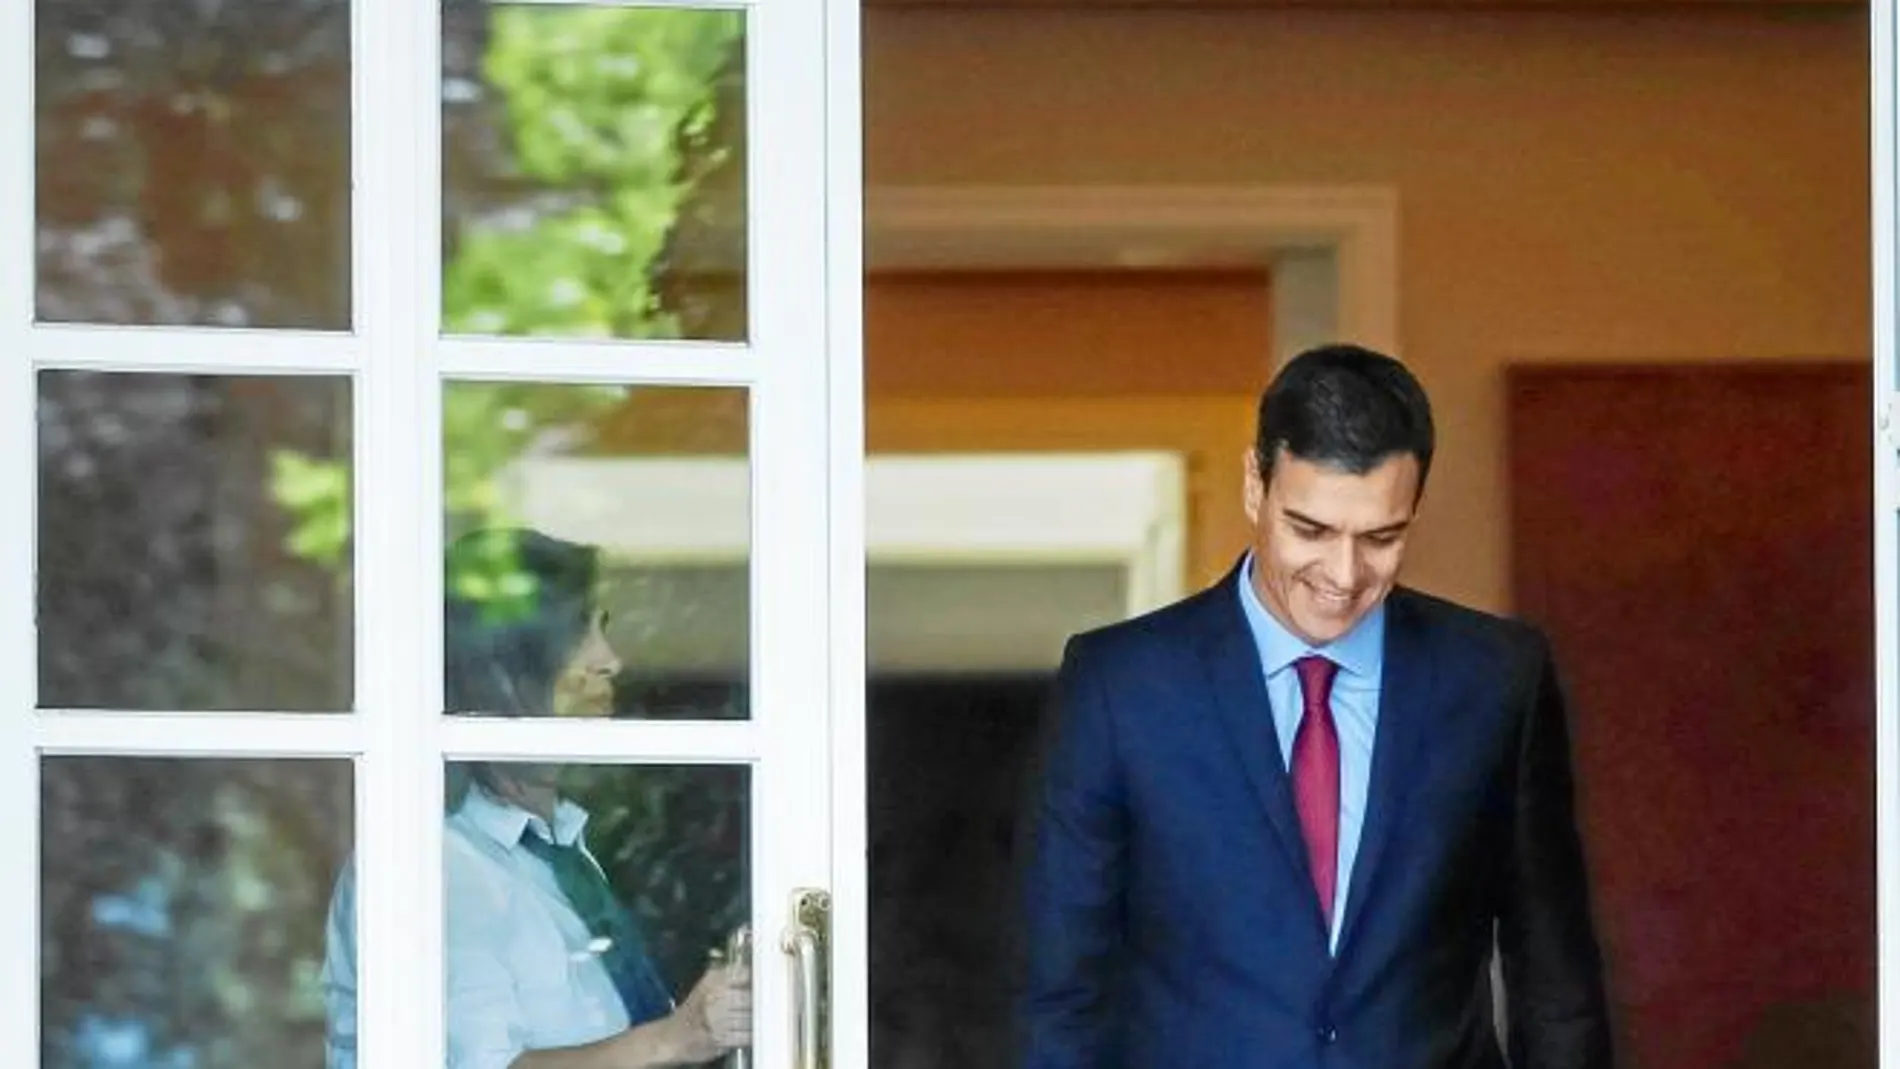 El presidente del Gobierno, Pedro Sánchez, sale del Palacio de Moncloa para recibir al presidente electo de Colombia, Iván Duque, la semana pasada / Efe